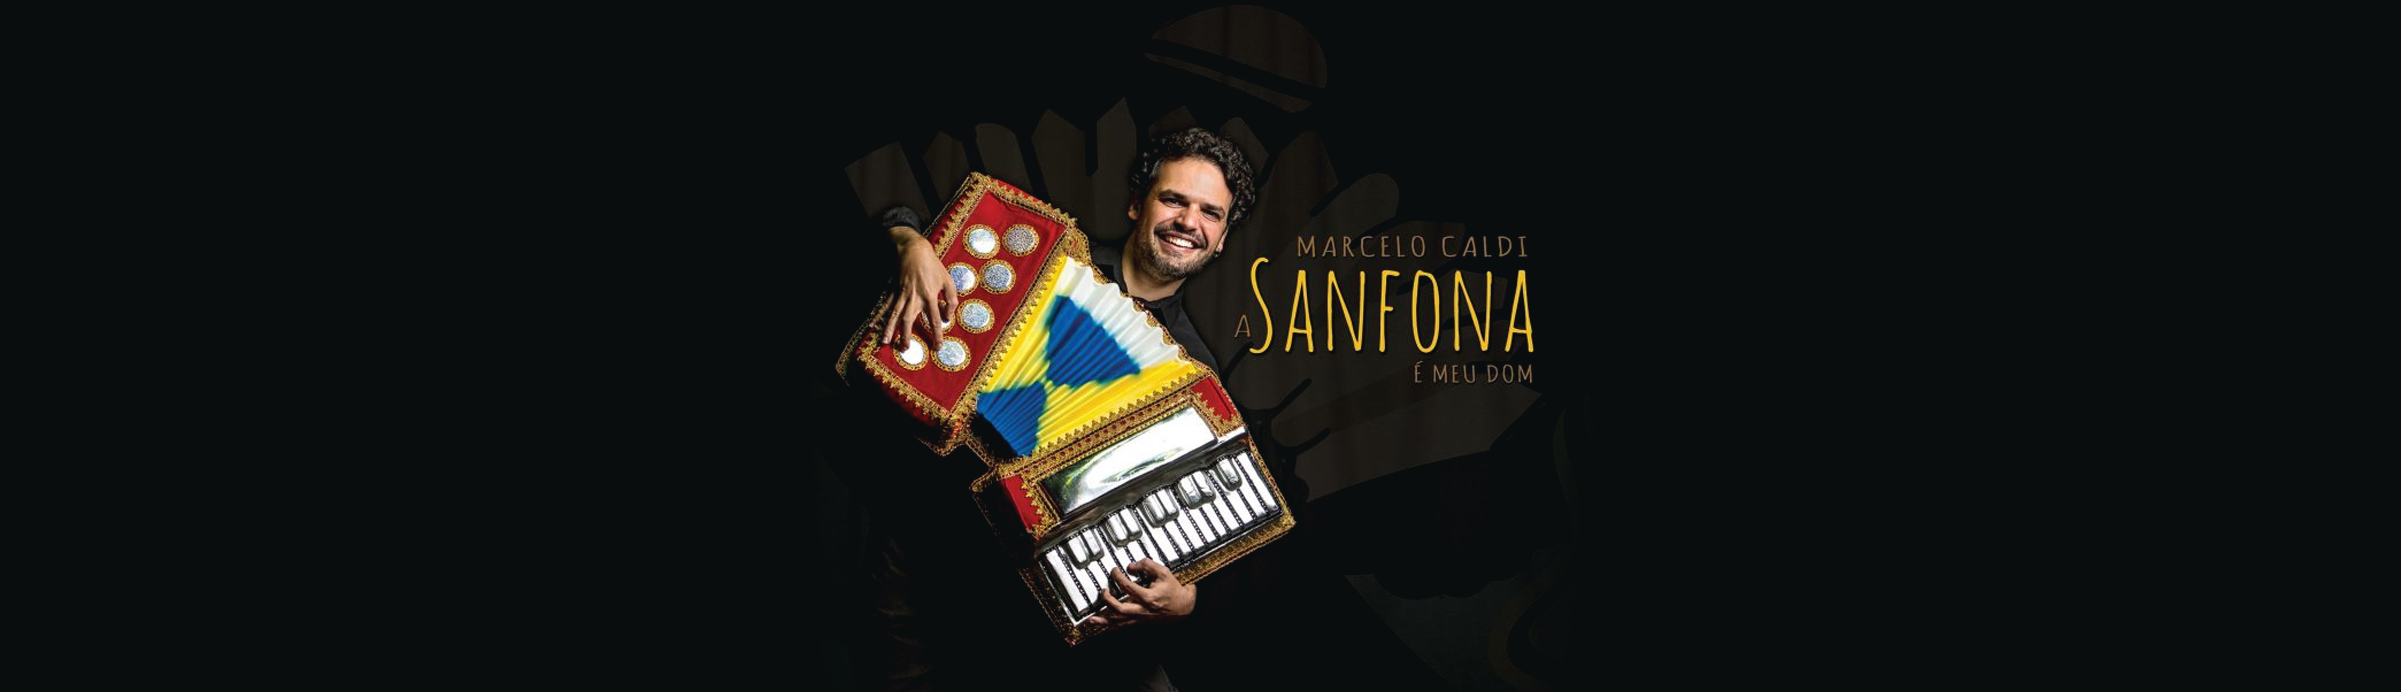 Marcelo Caldi proclama em show e disco, “A sanfona é meu dom”